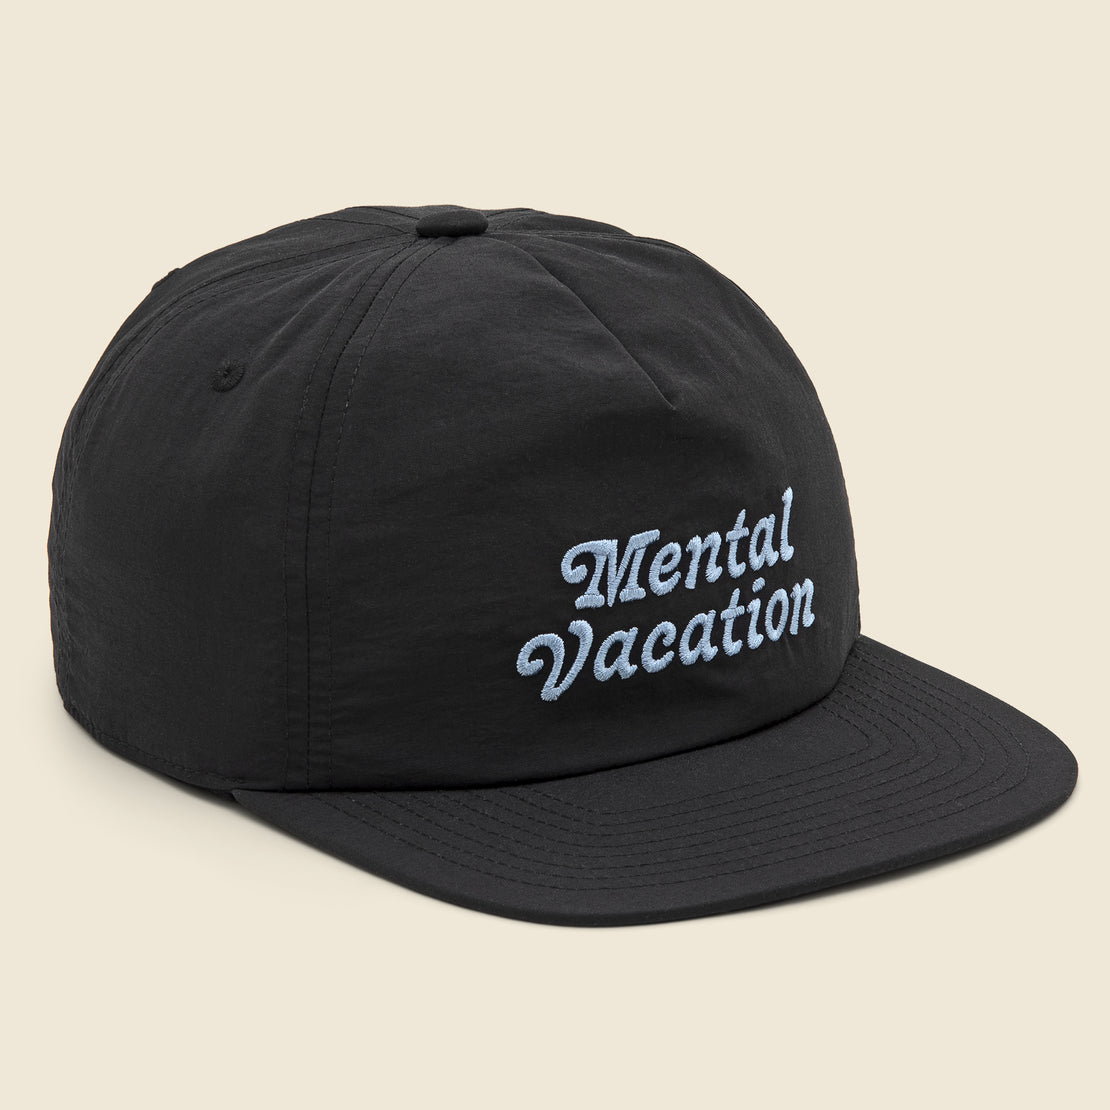 Katin Mental Vacation Hat - Black/Blue